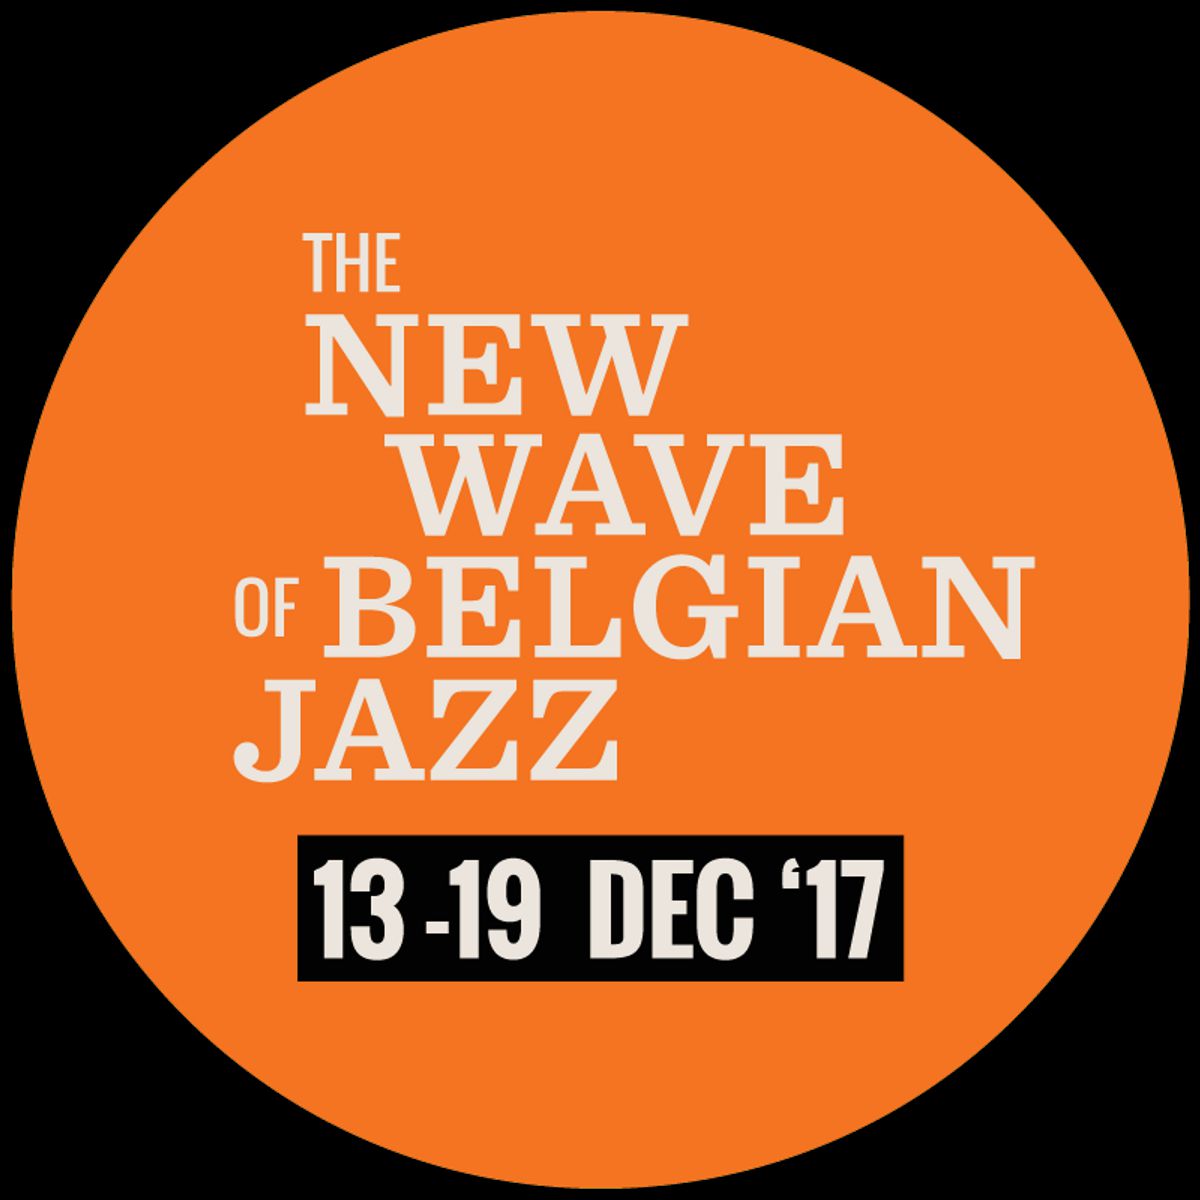 Honderd jaar jazz: Belgische jazz on the move 